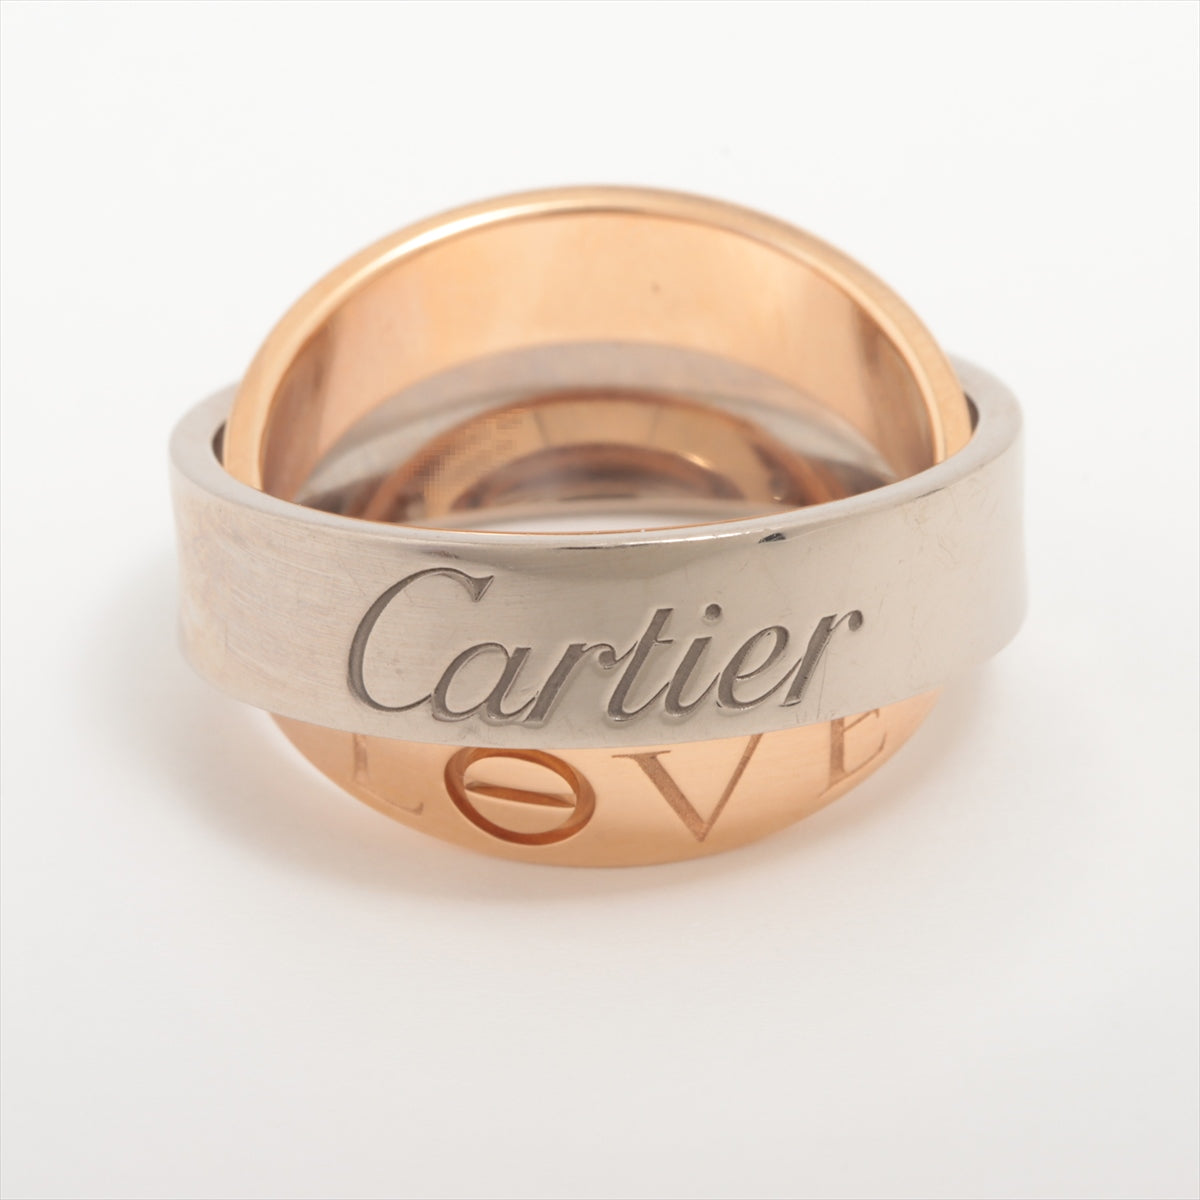 Cartier Secret Love rings 750(PG×WG) 11.2g 54